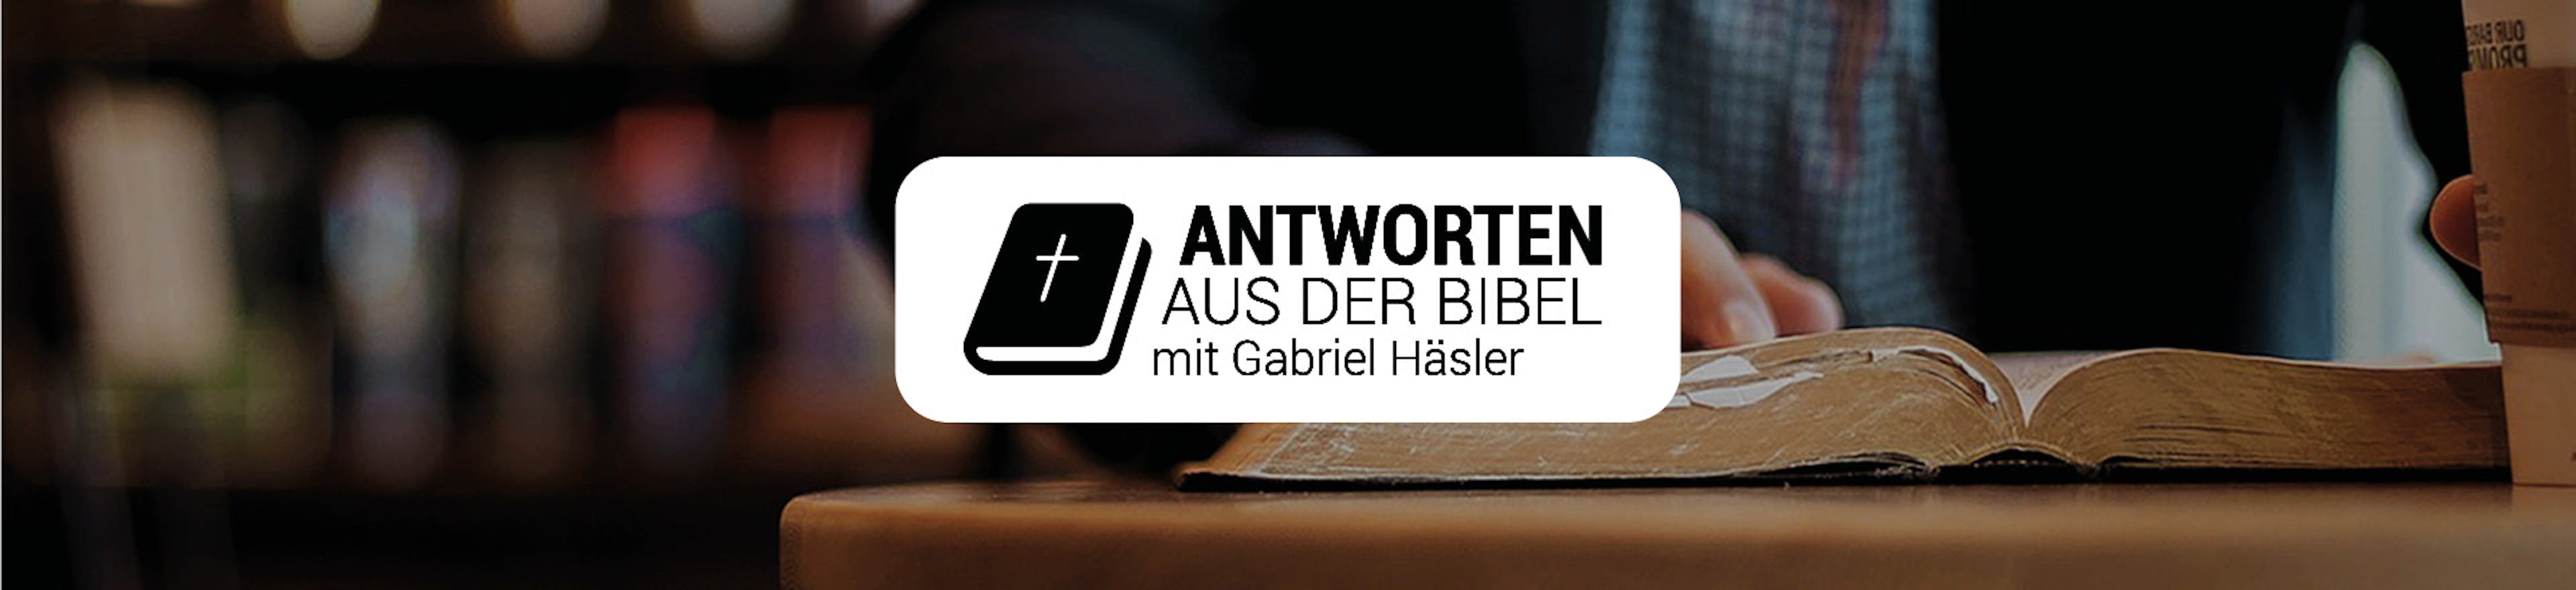 Antworten aus der Bibel mit Gabriel Häsler